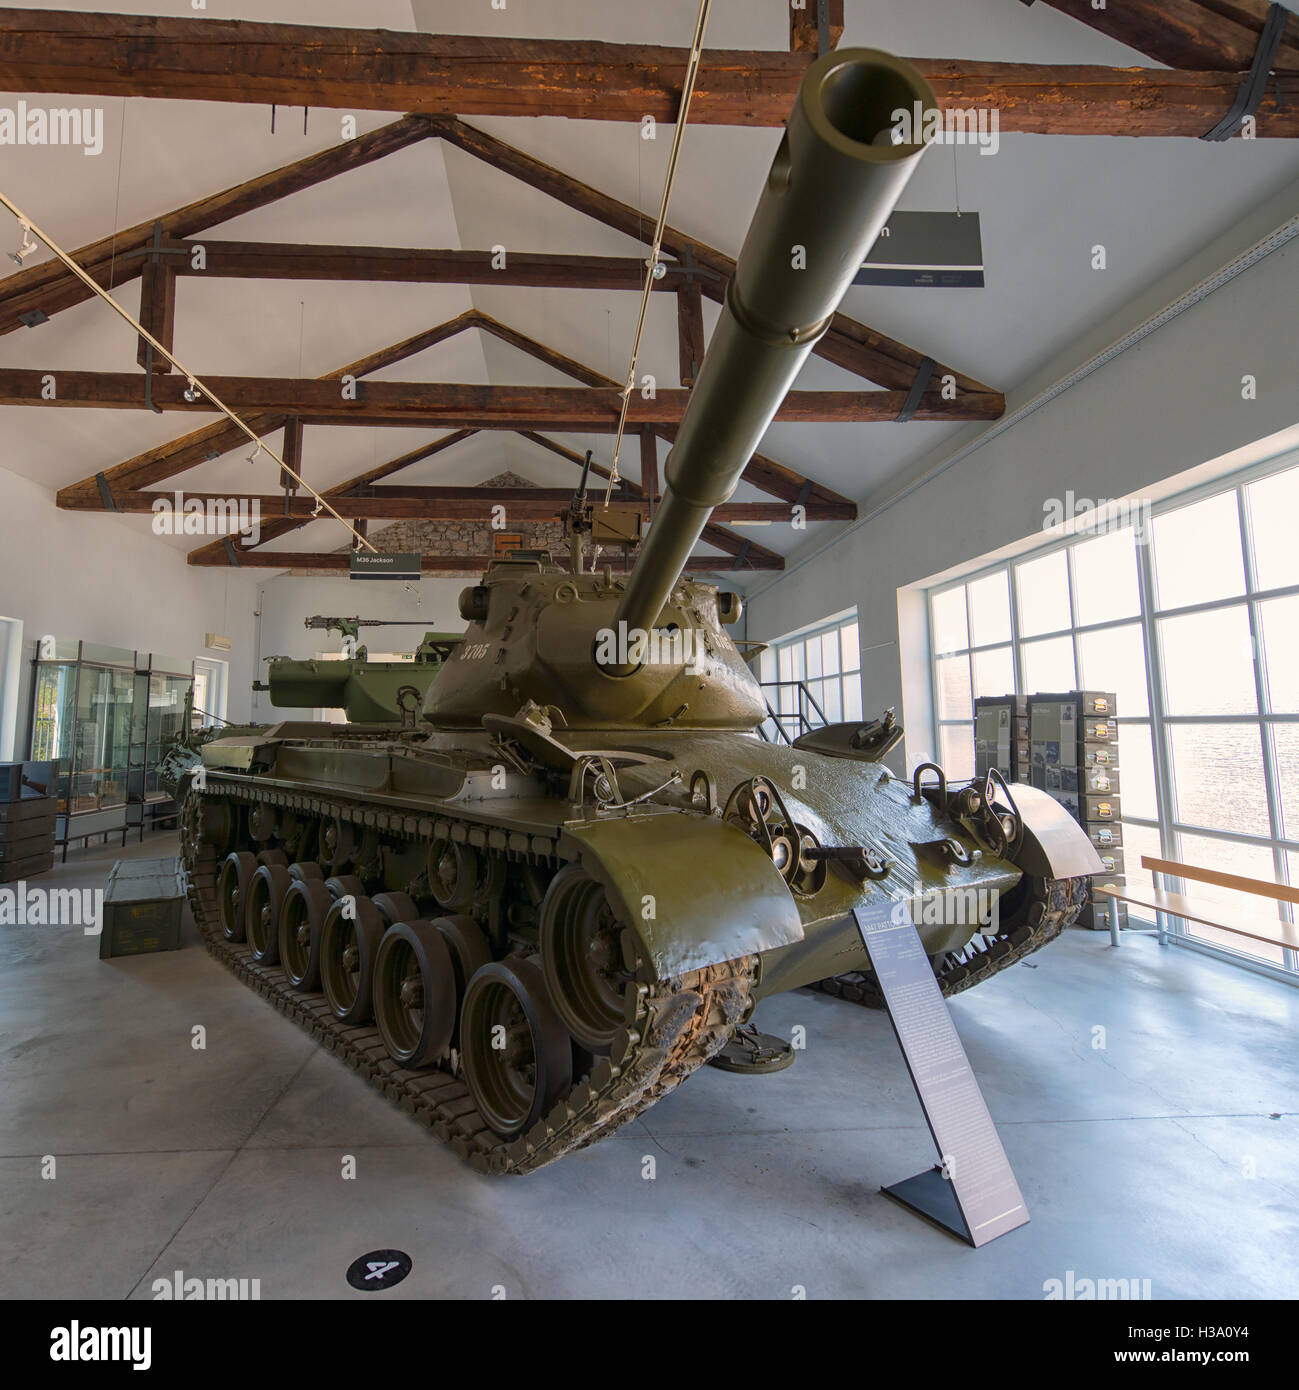 M47 Patton Medium Tank at Military History Park in Pivka, Slovenia Stock Photo